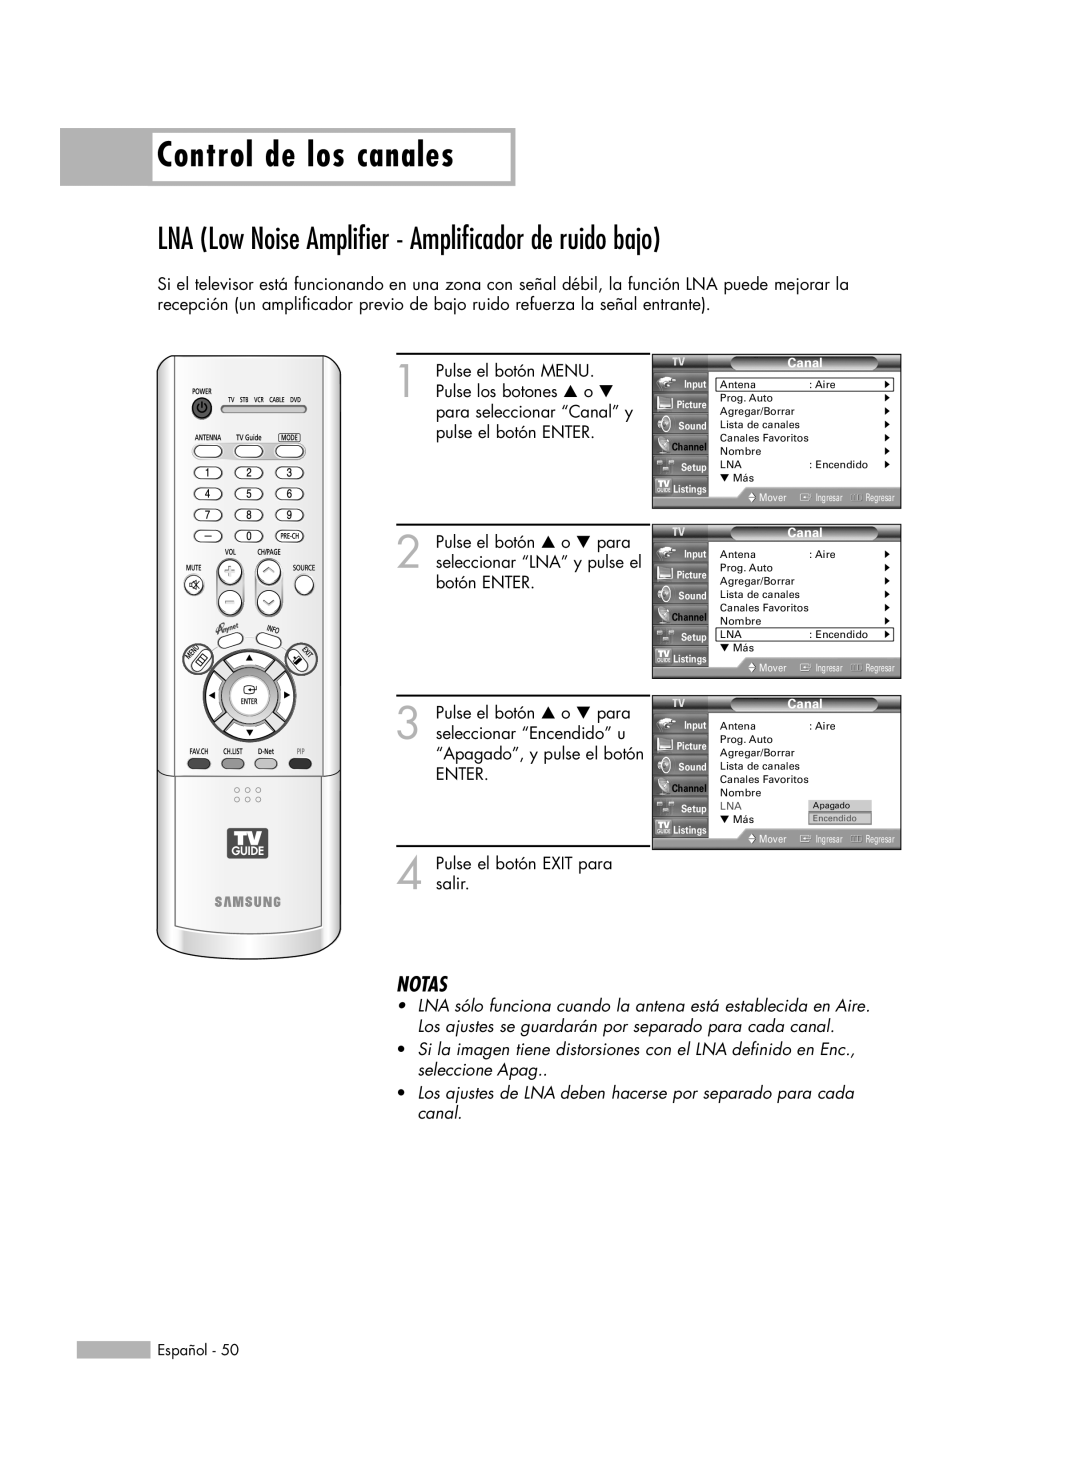 Samsung HL-R5678W, HL-R6178W, HL-R5078W, HL-R7178W Control de los canales, Notas, ENTER 4 Pulse el botón EXIT para salir 